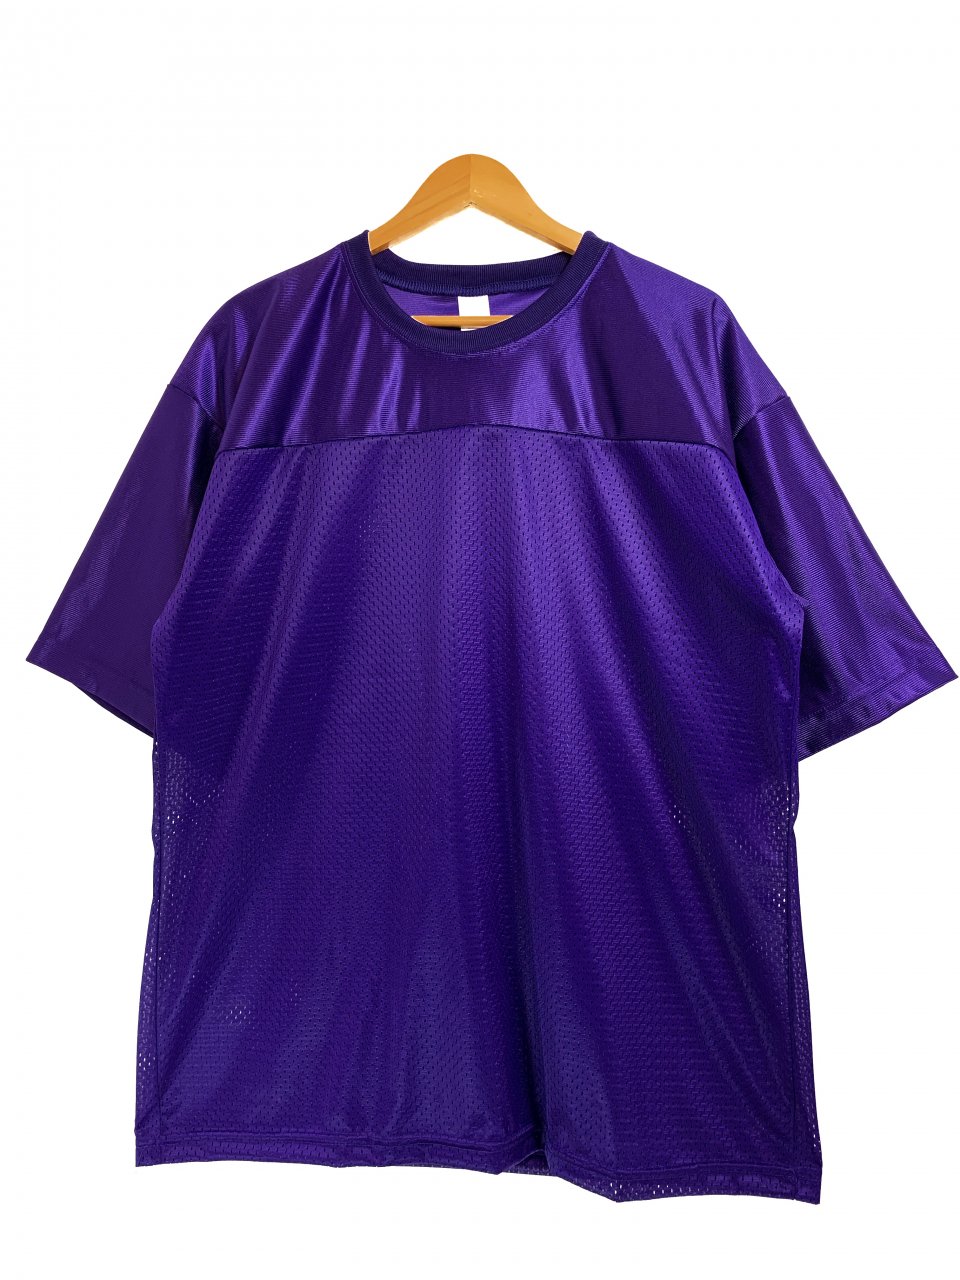 新品 USA製 MASHROOM Walter Mesh Football S/S Tee (PURPLE) マッシュルーム フットボールシャツ  フットボールT 無地 紫 - NEWJOKE ONLINE STORE